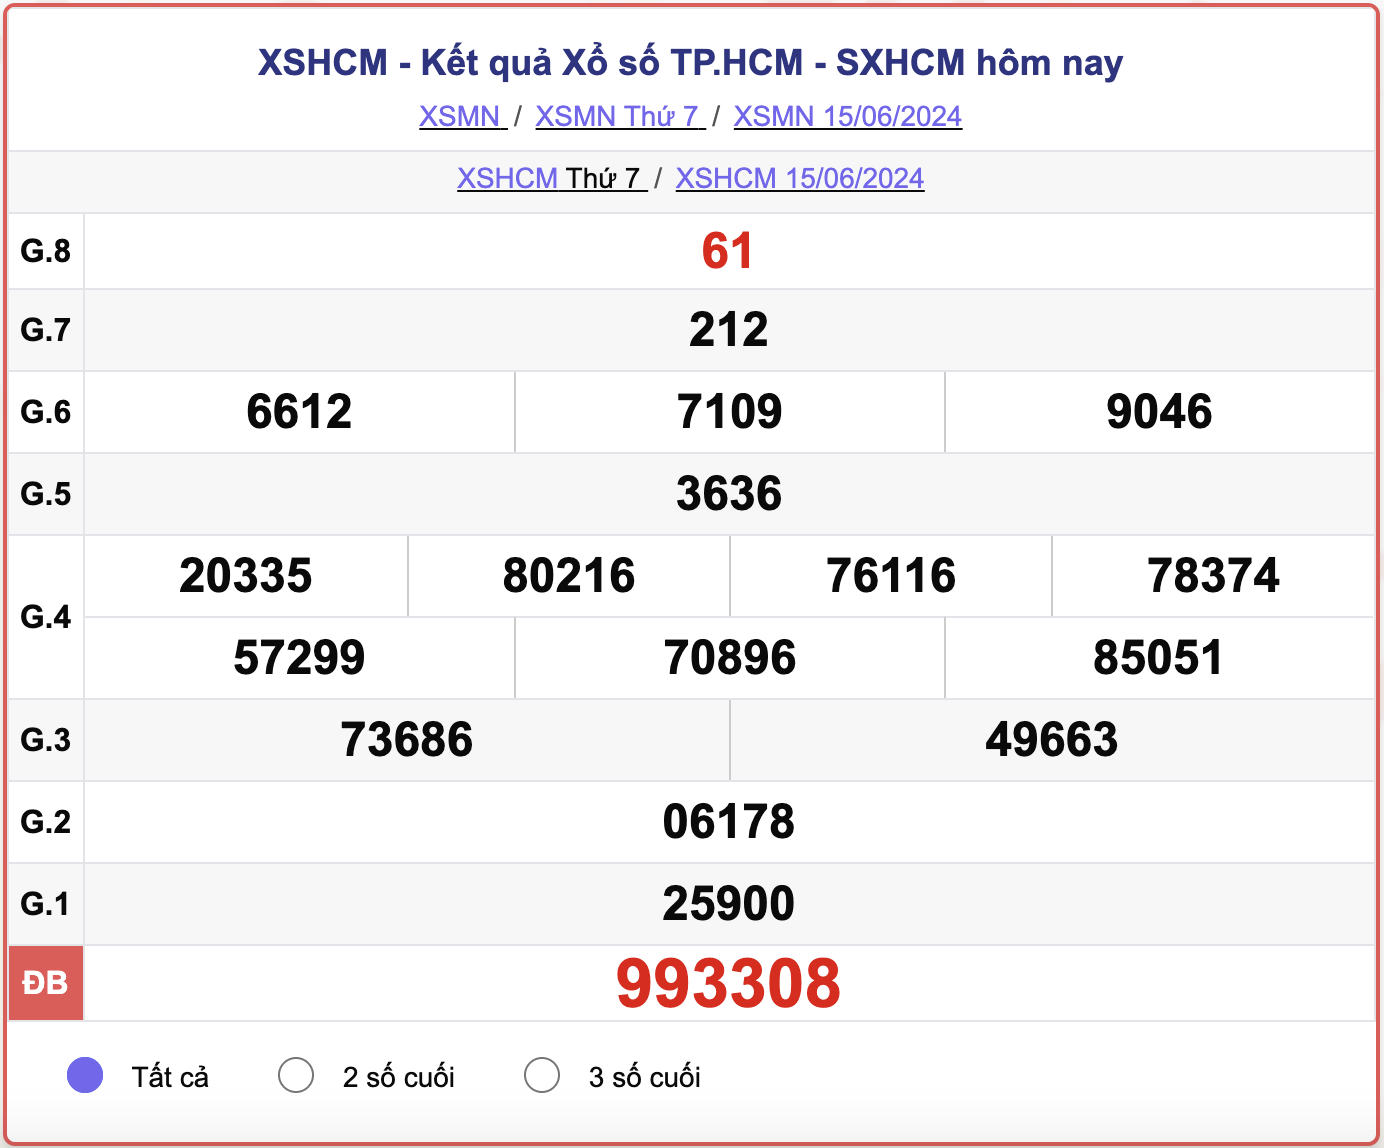 XSHCM 15/6, kết quả xổ số TP.HCM hôm nay 15/6/2024.